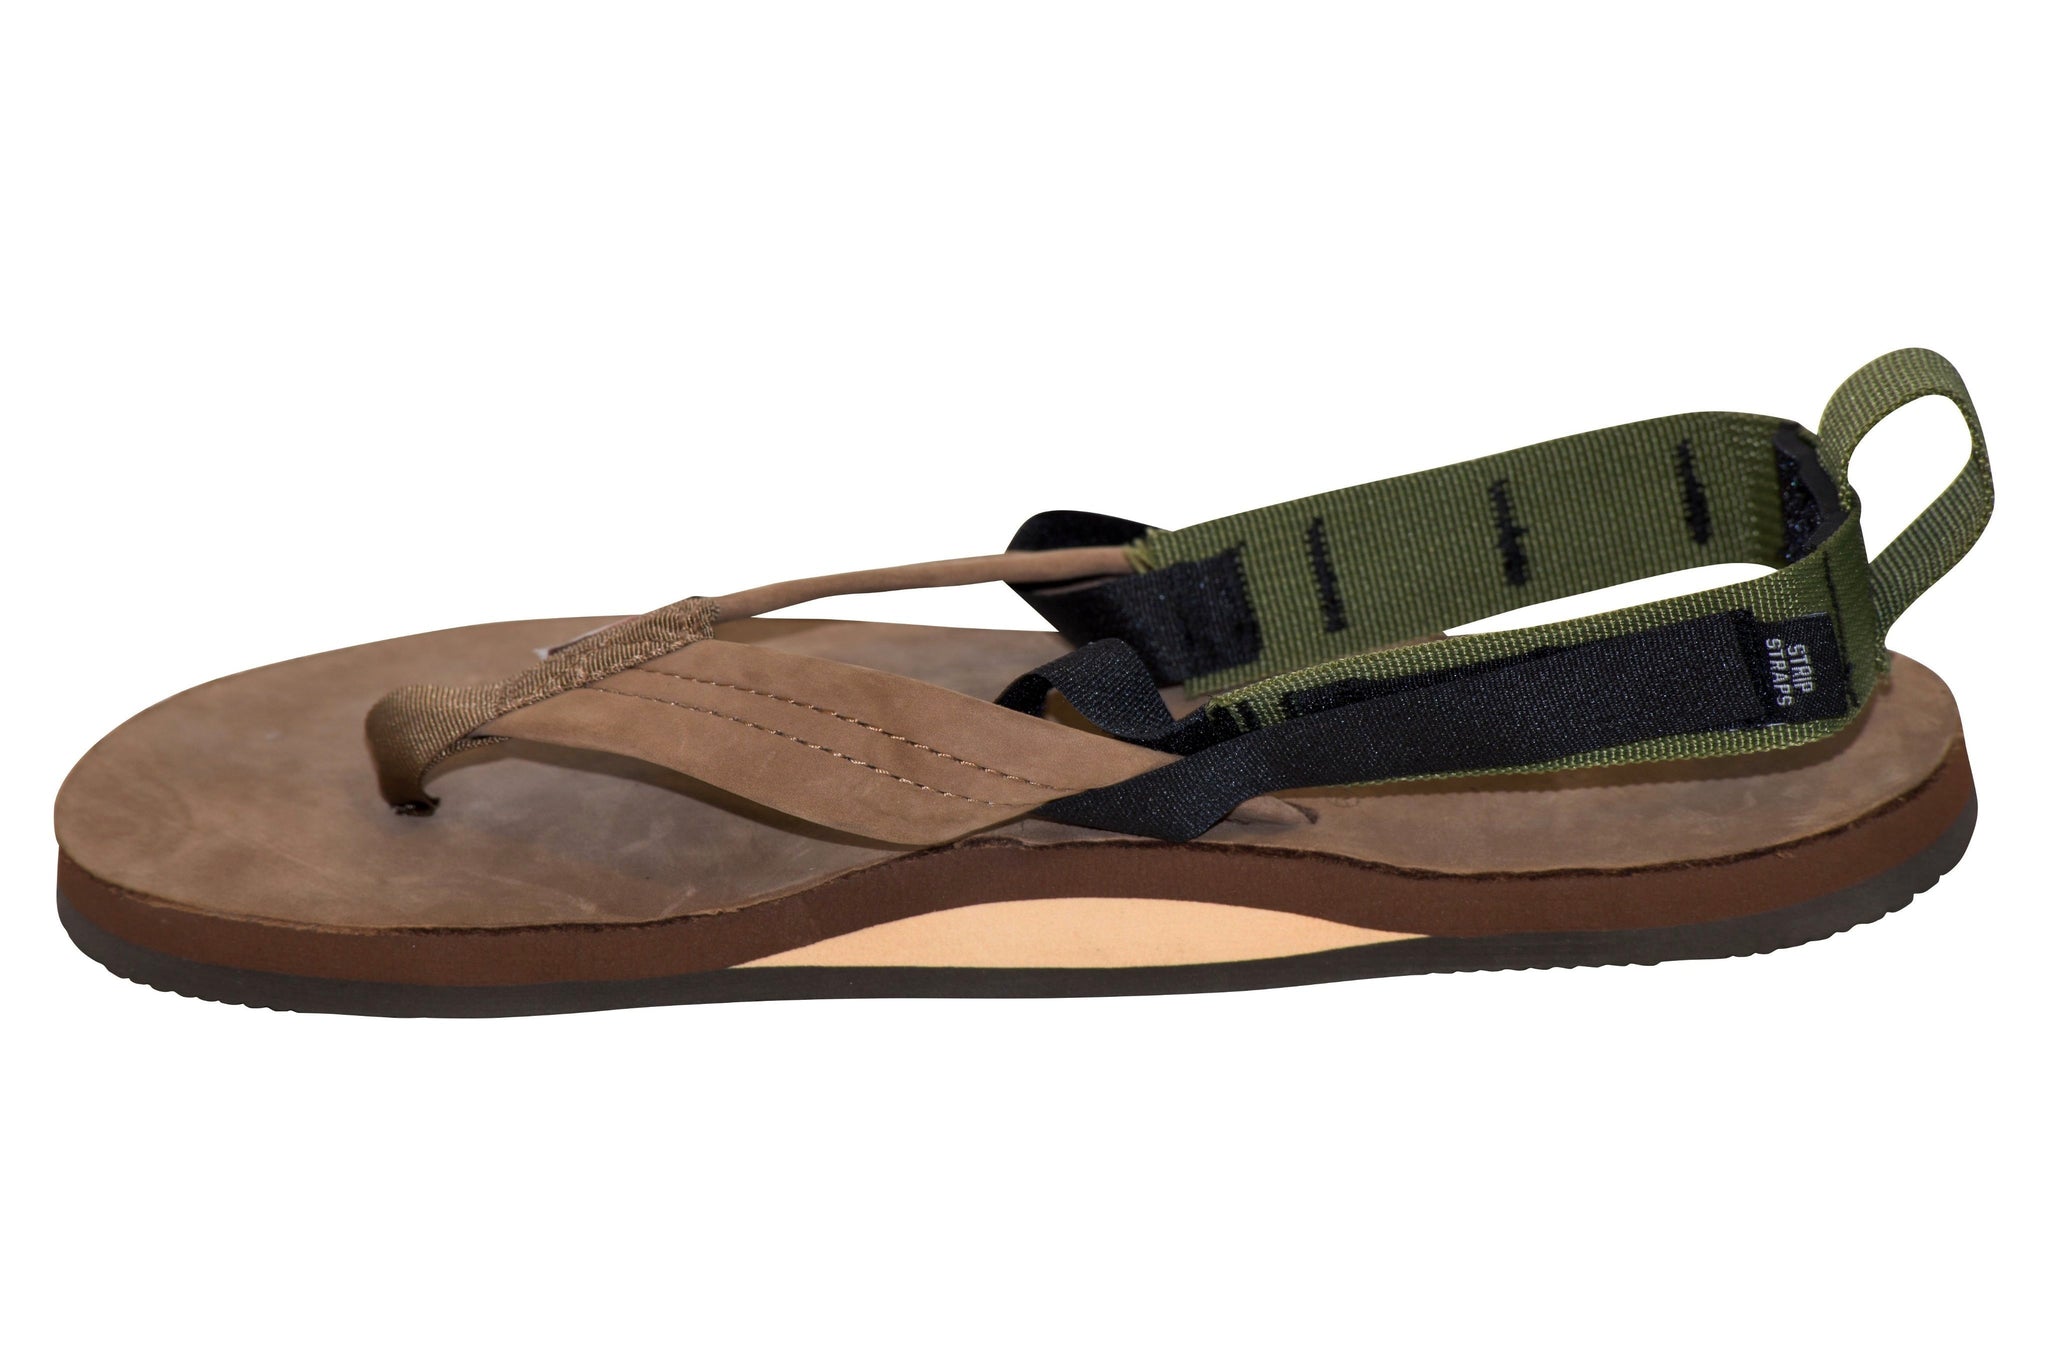 leather strap flip flops